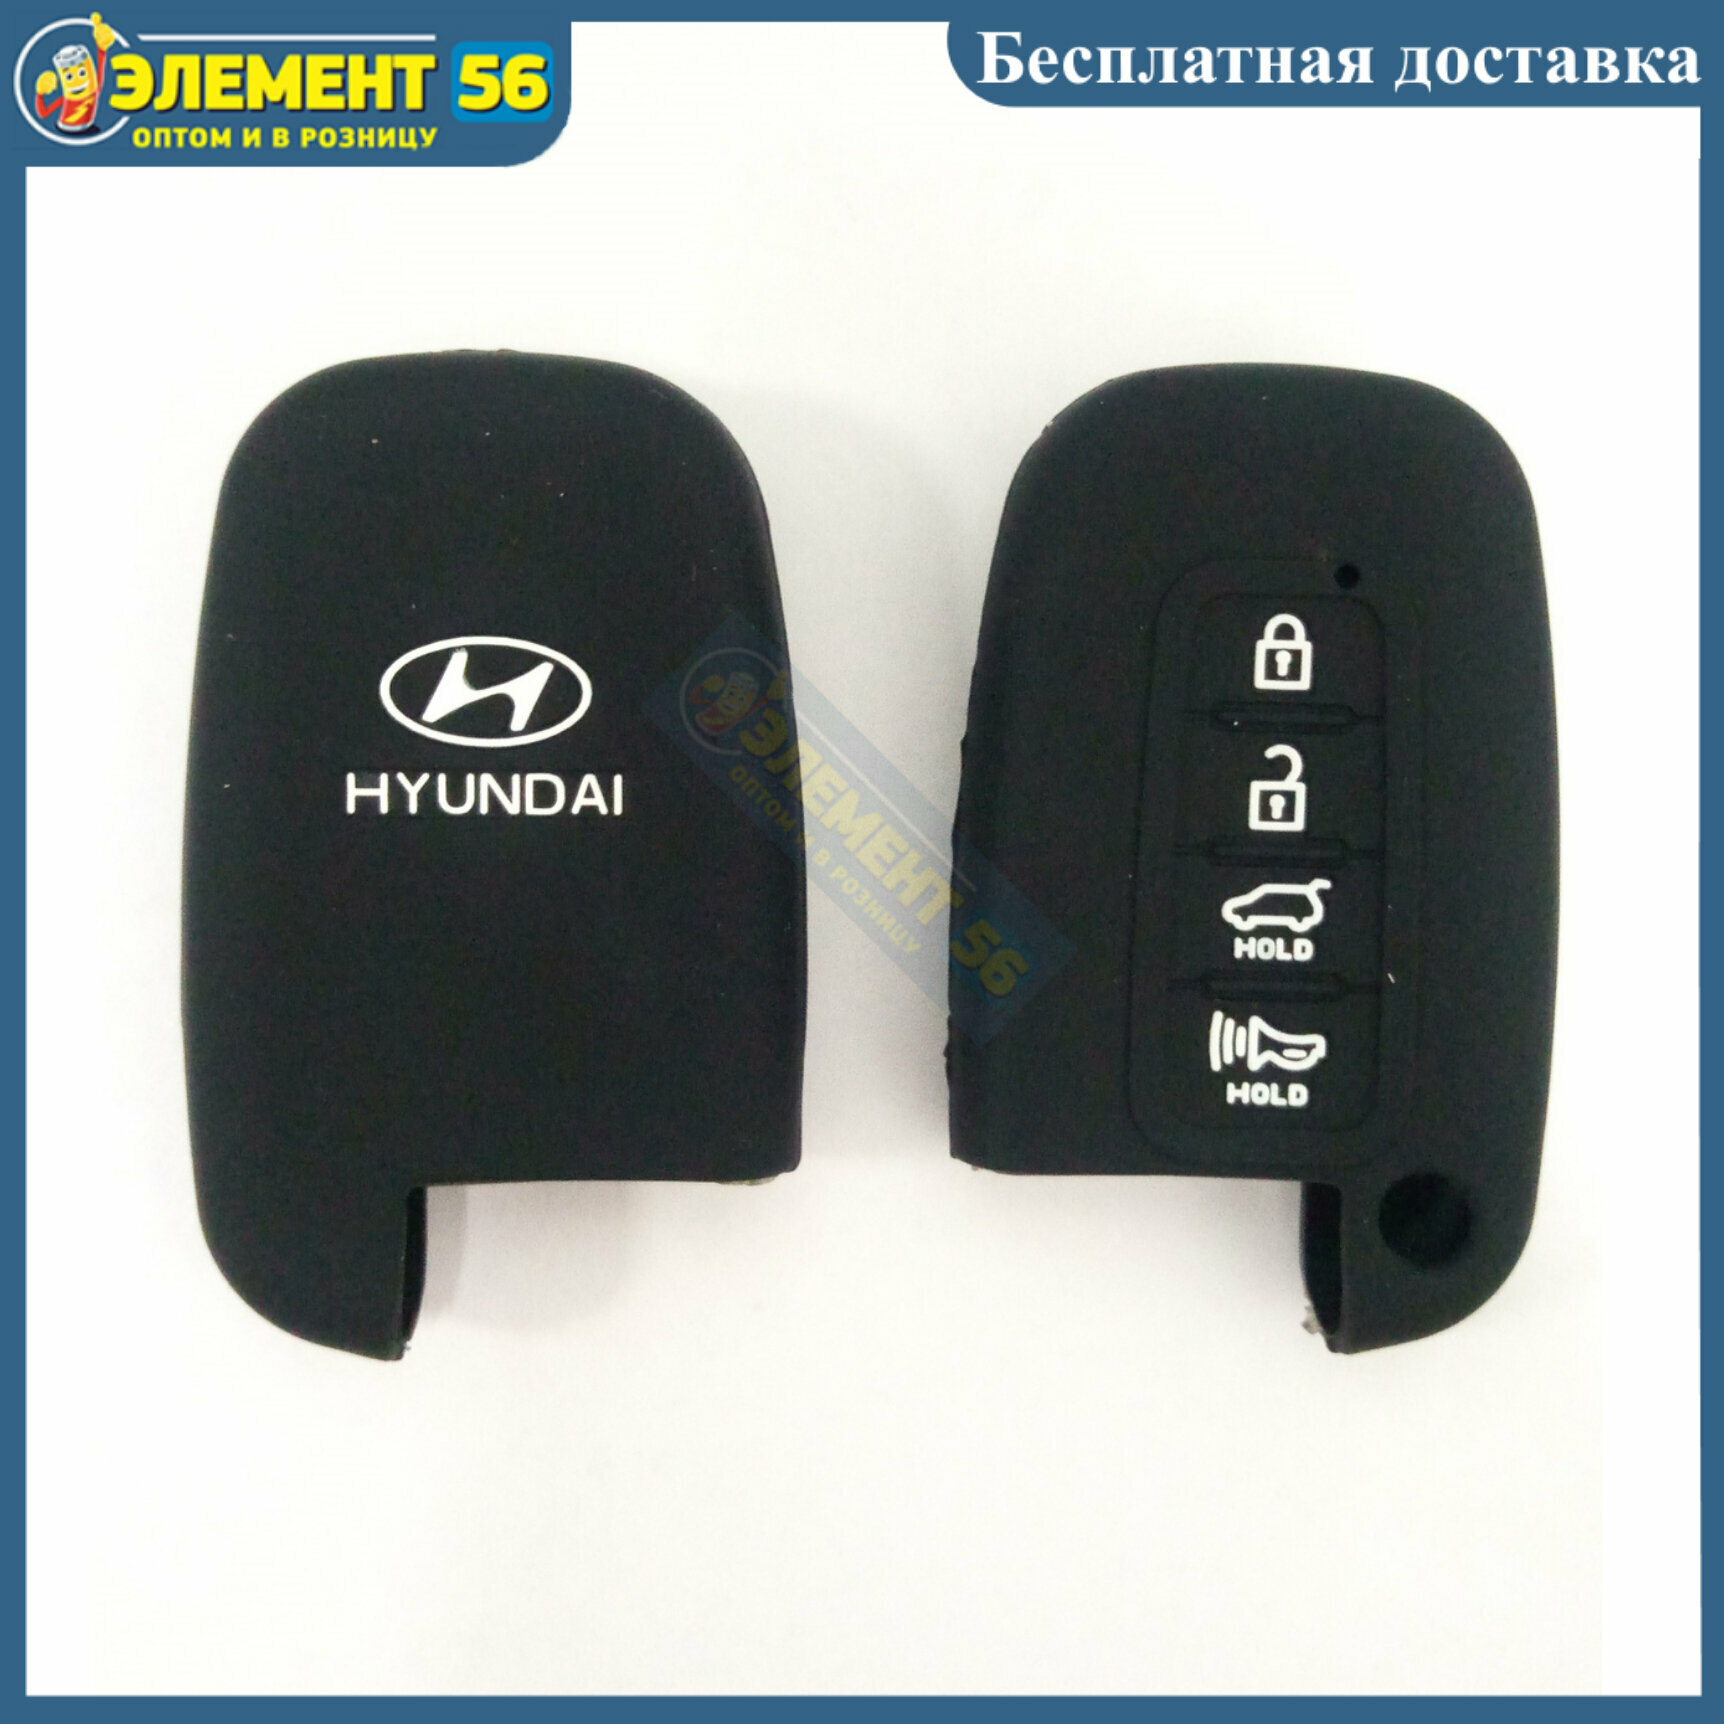 Чехол силиконовый для ключа зажигания HYUNDAI Smart 4 buttons; IX35 New Sonata LingXiang EQUUS Rohe. 4 кнопки